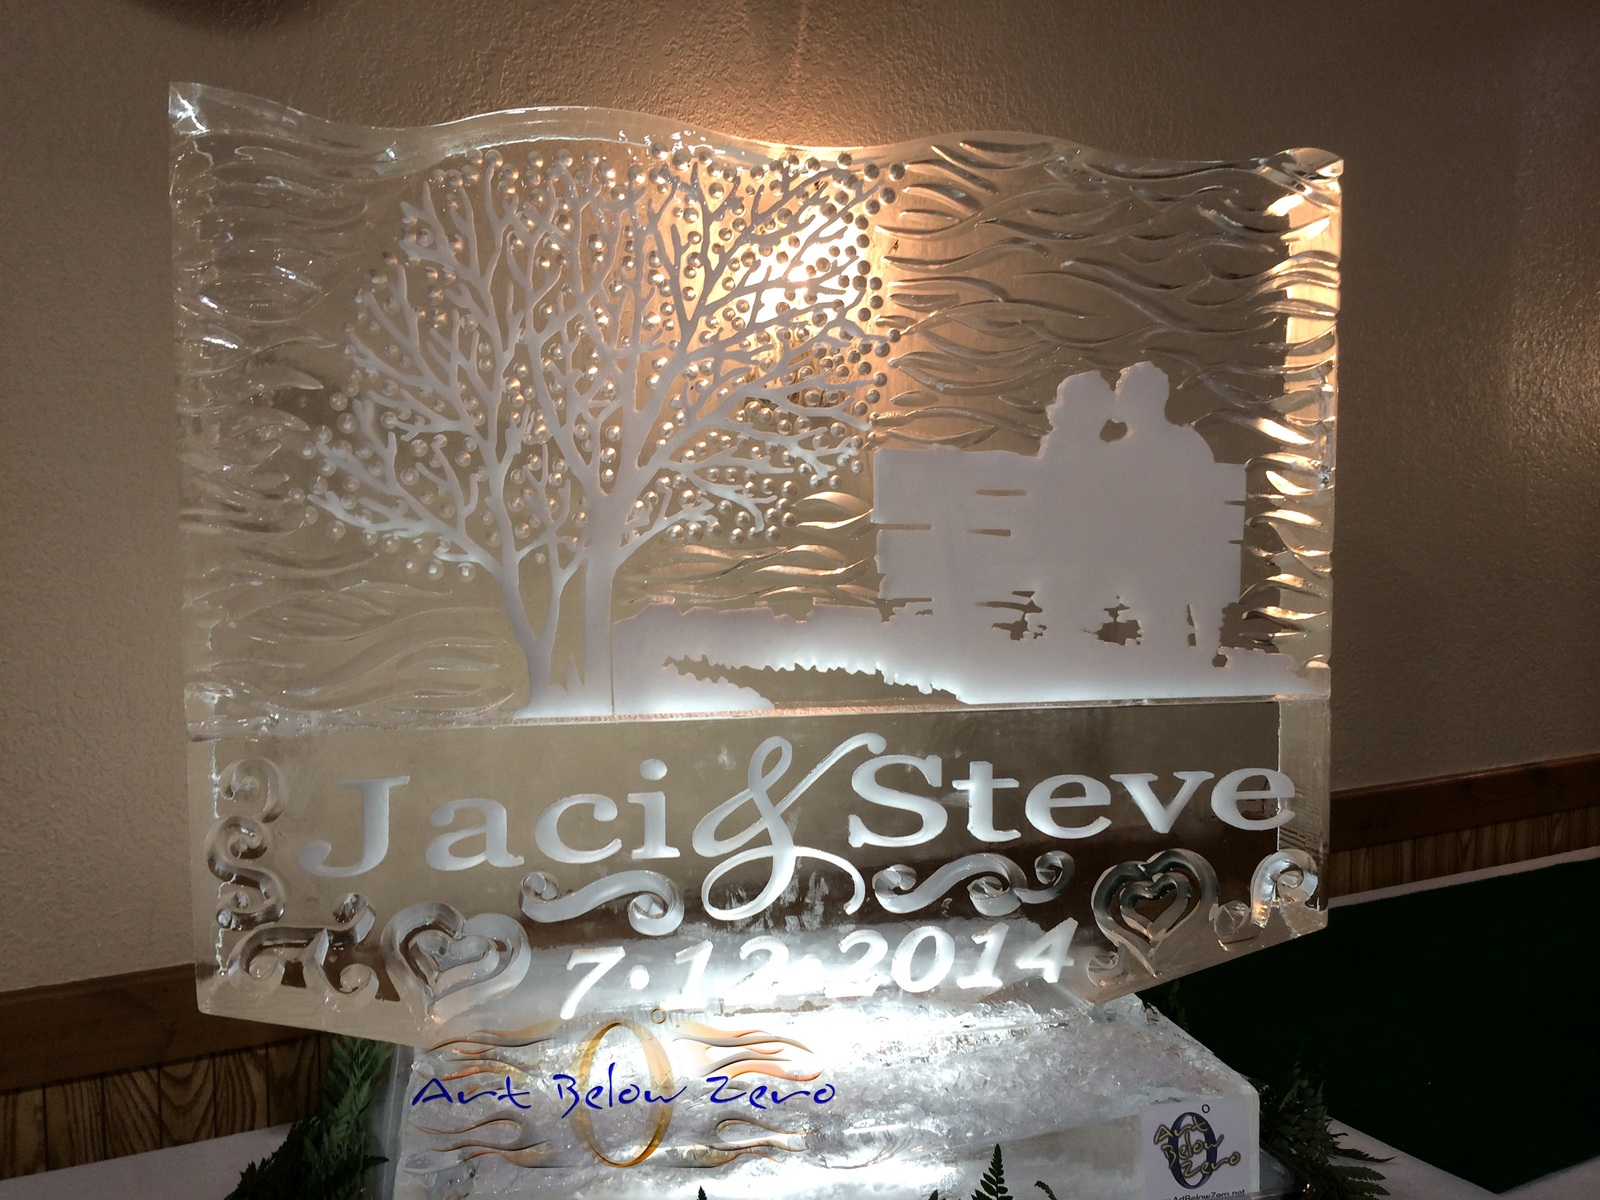 Jaci___steve_s_silouette_ice_sculpture